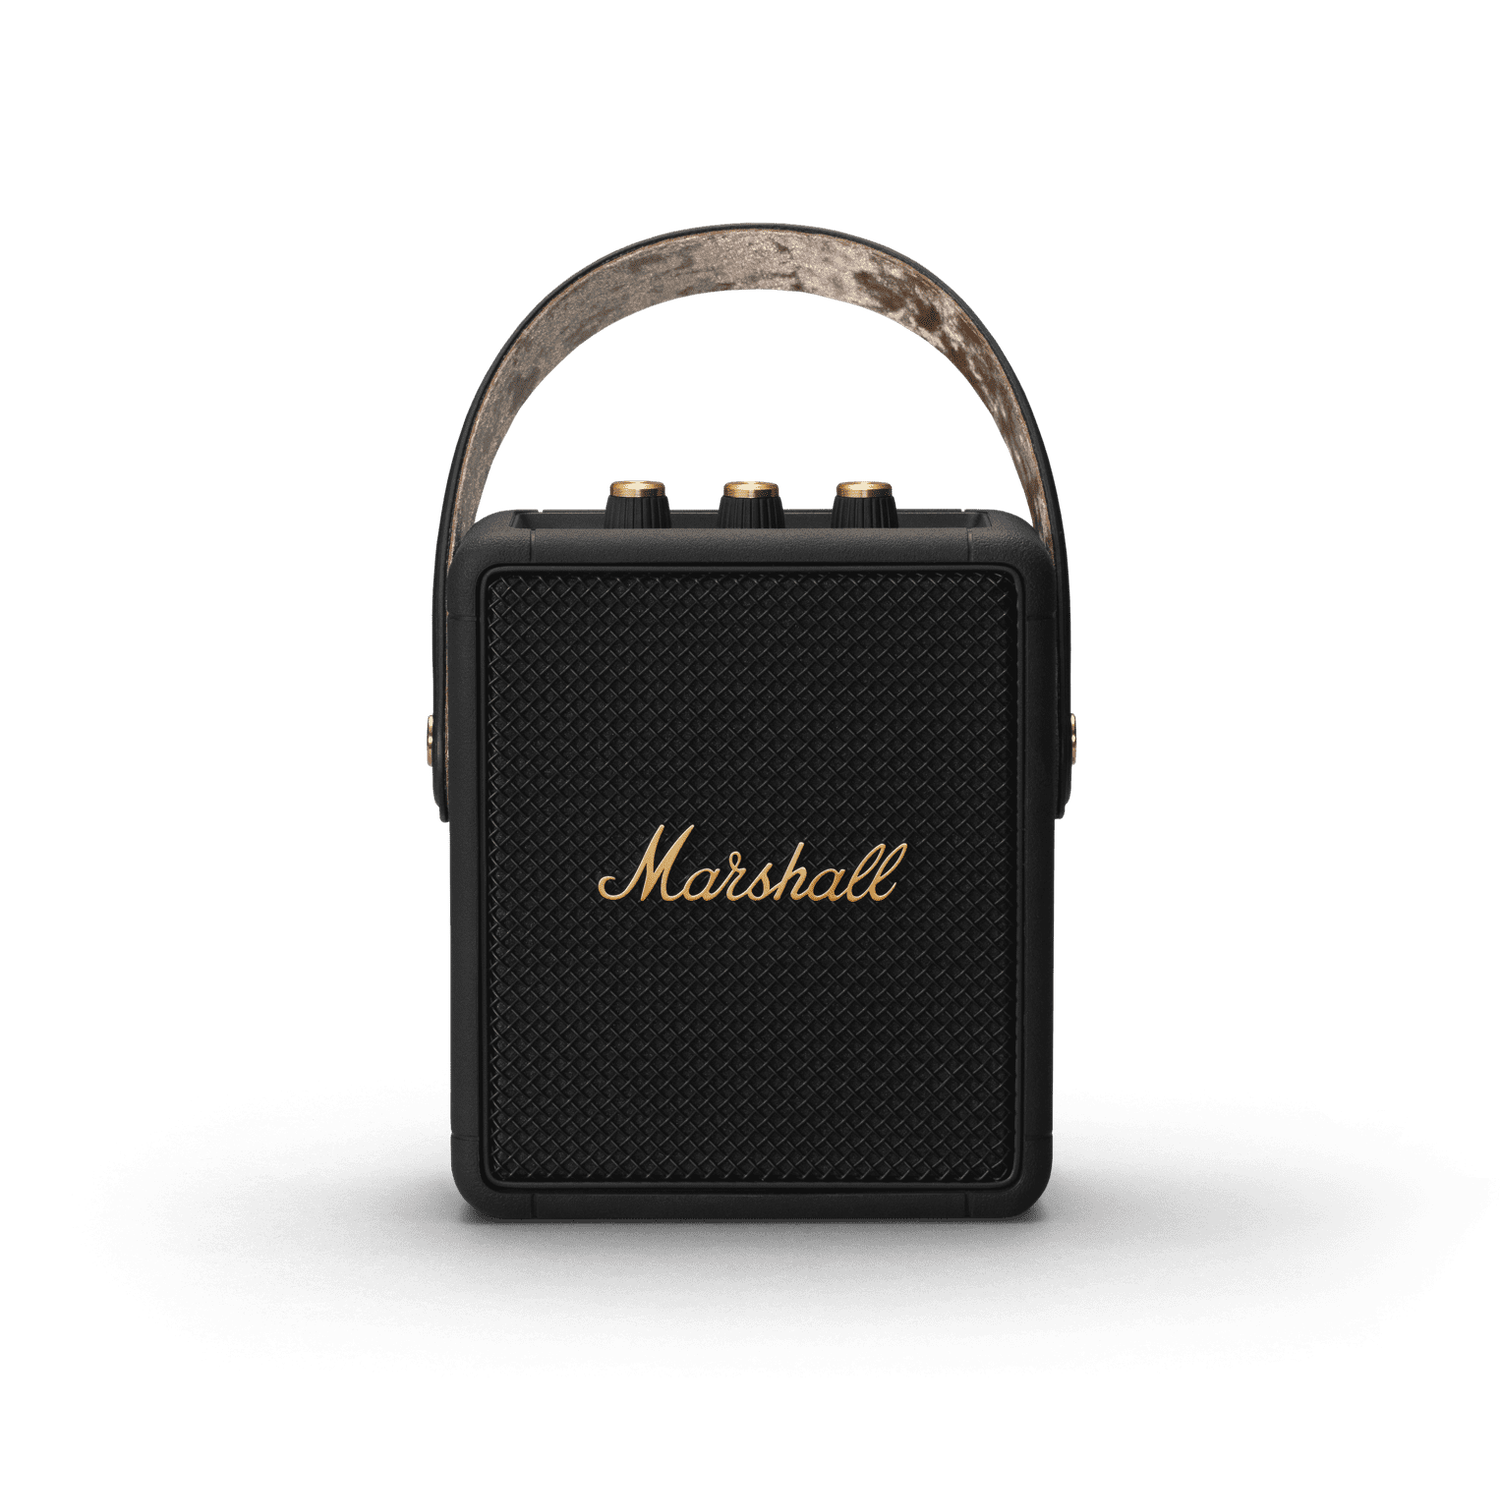 Marshall Stockwell II Portable Bluetooth Speaker (main)